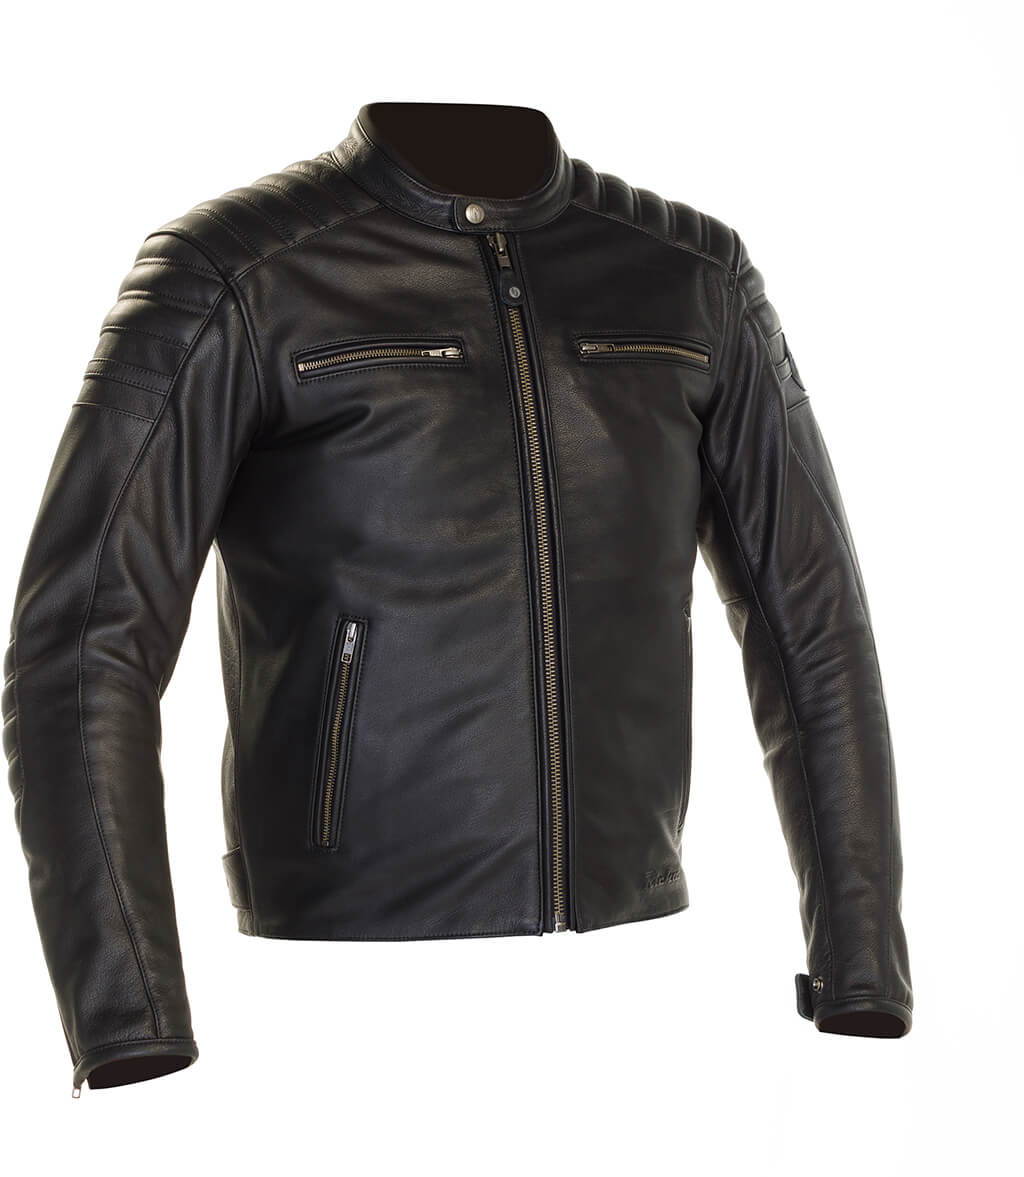 Daytona Jacket Biker Leather Jacket